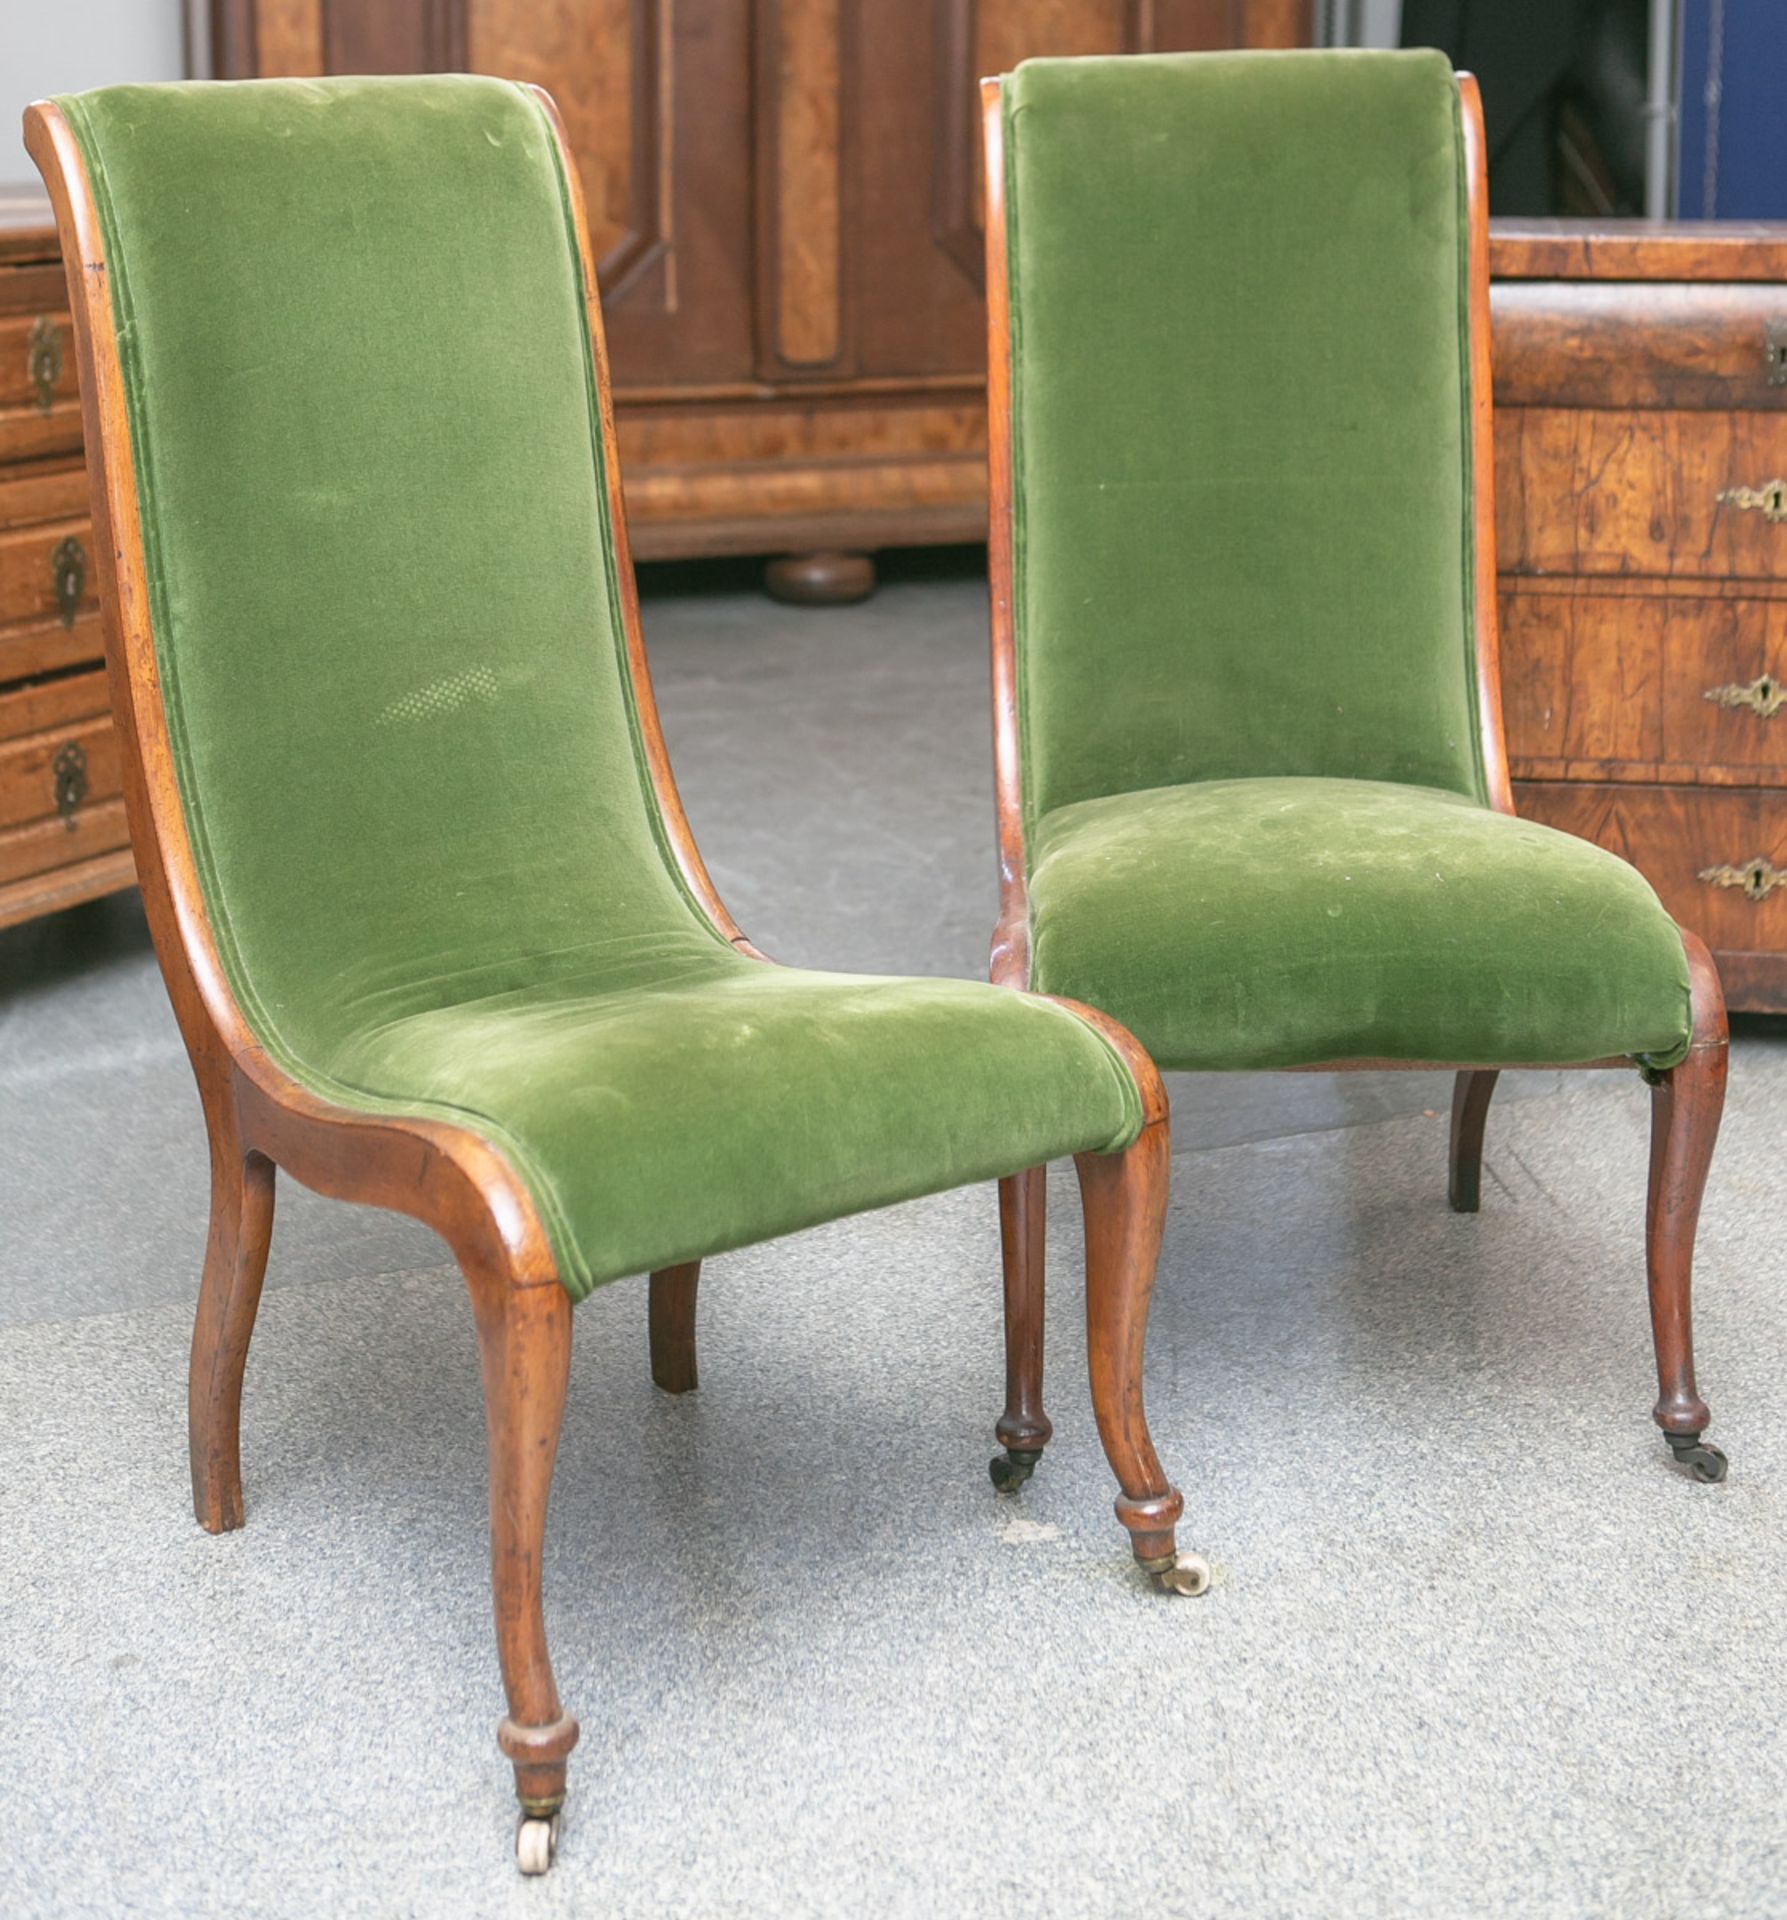 2 Stühle (um 1850/70), in der Form